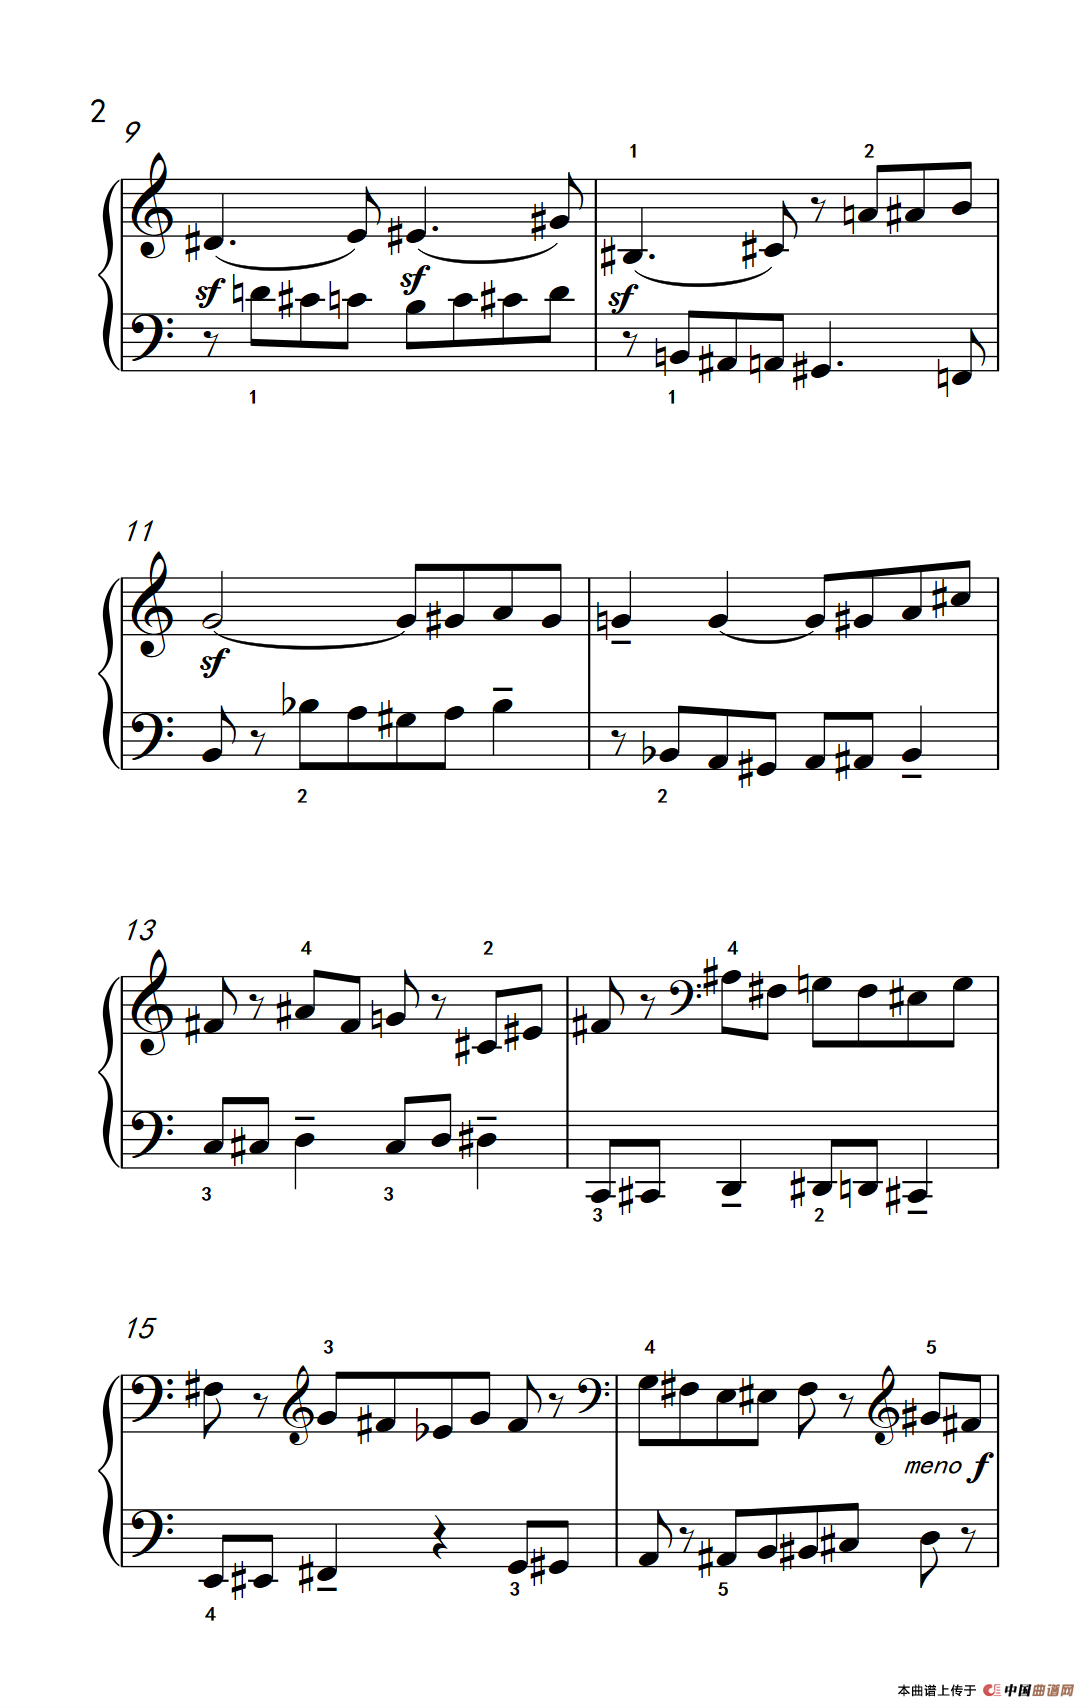 《半音创意曲 A》钢琴曲谱图分享